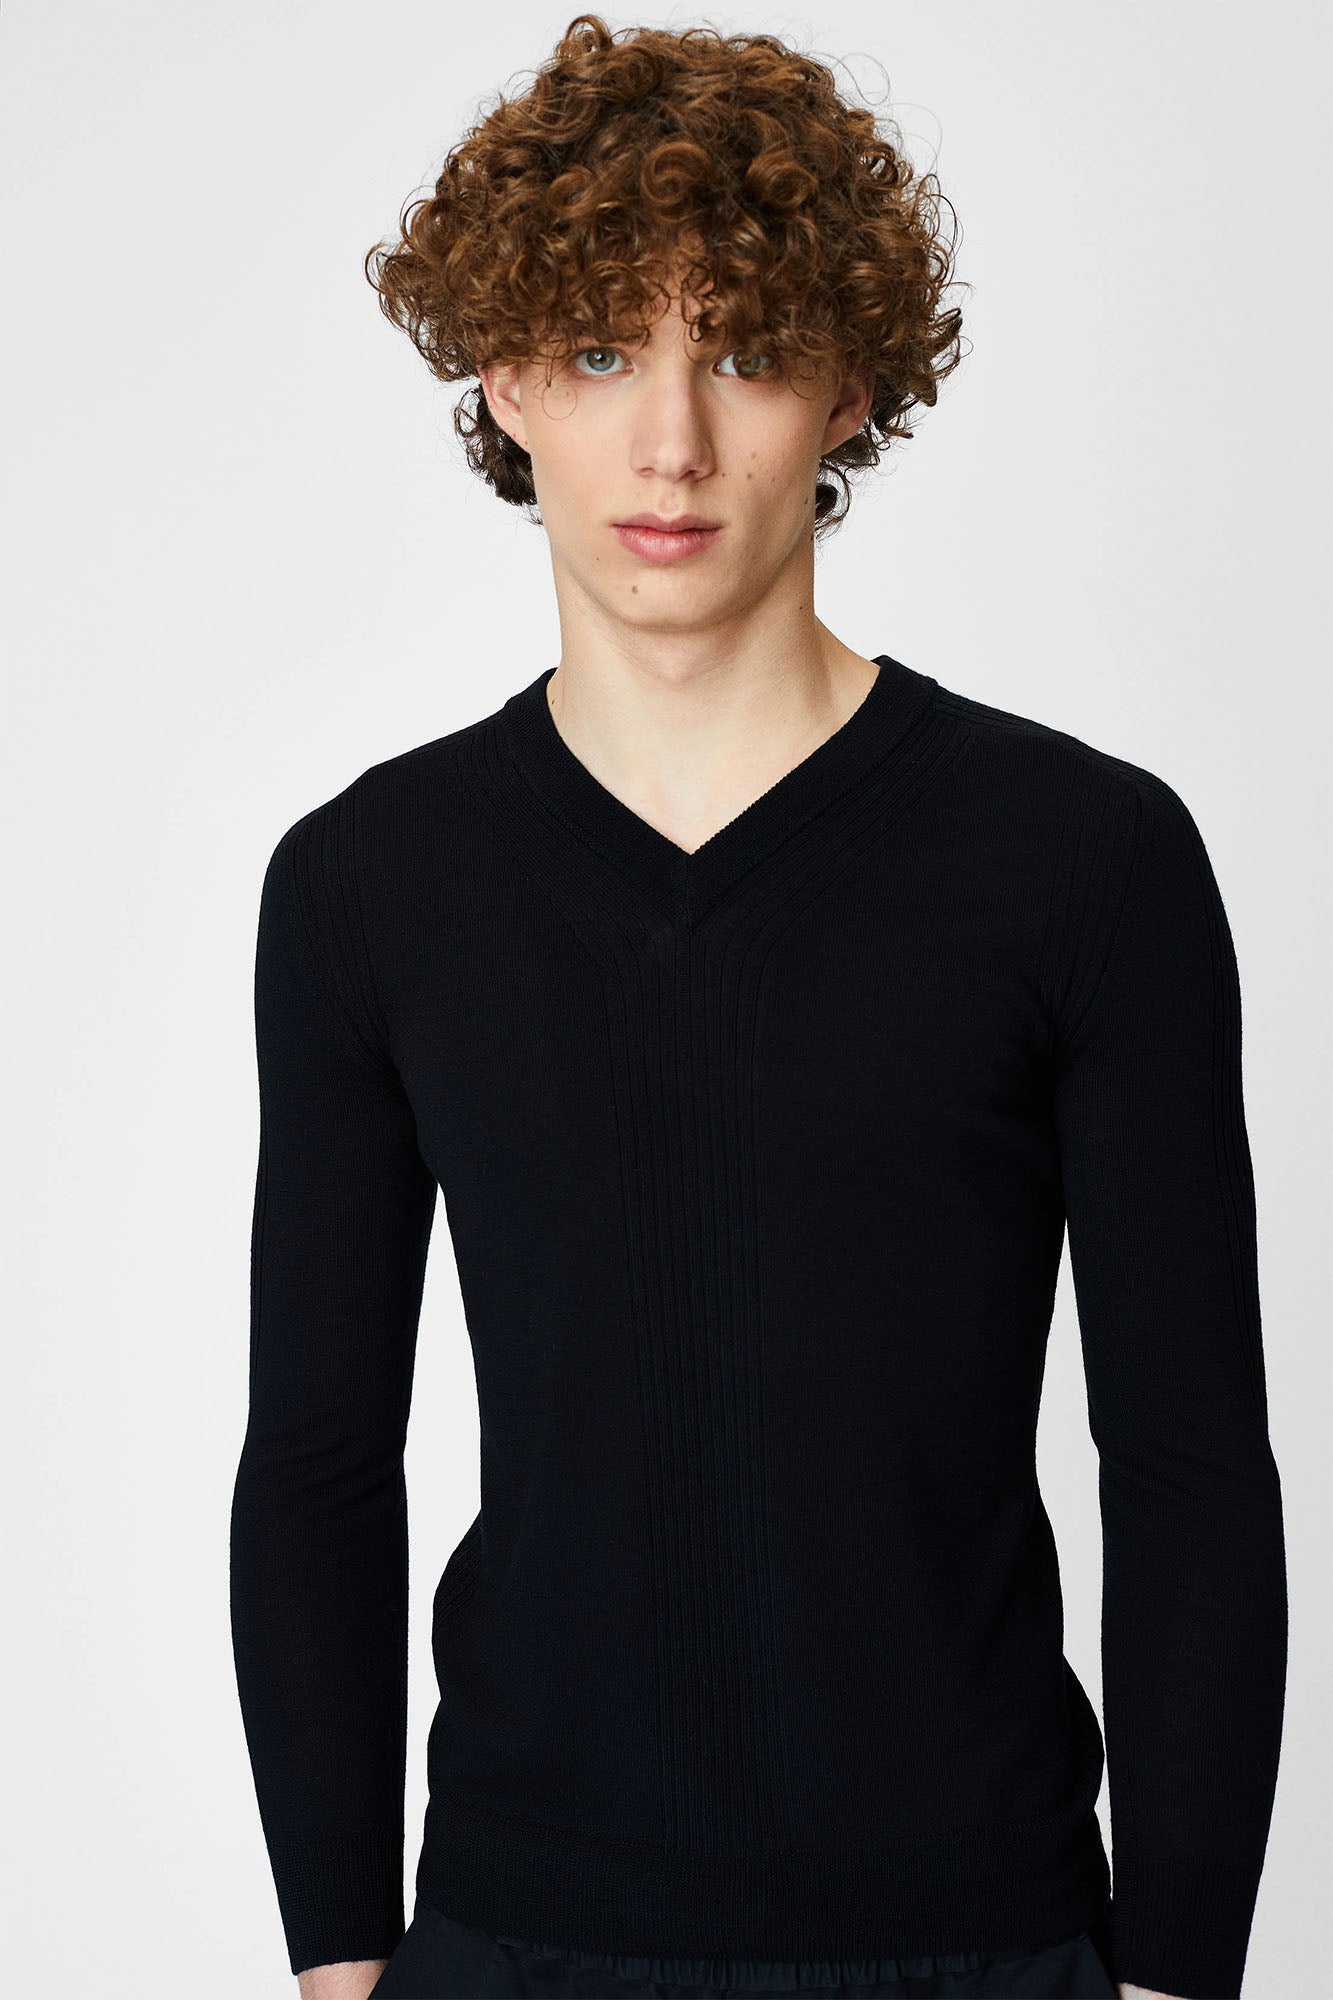 V-neck sweater for men